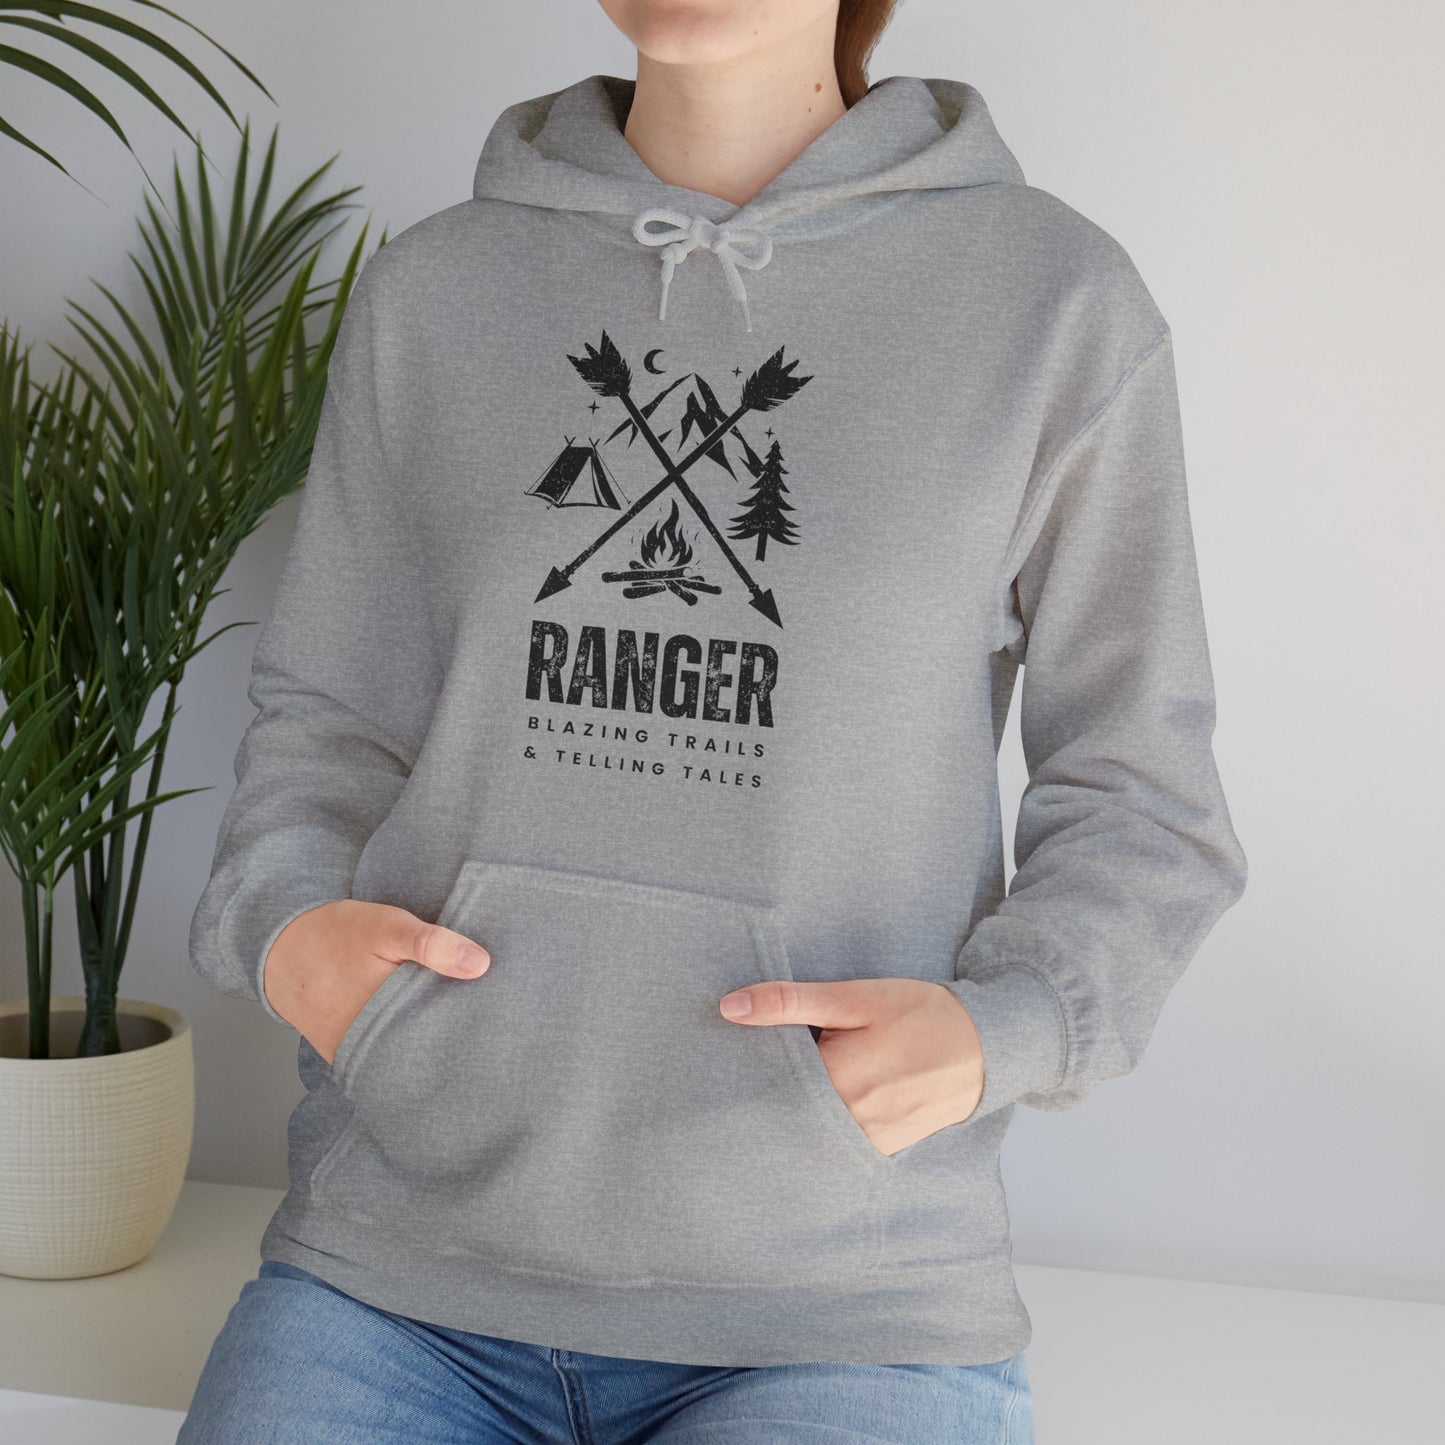 Ranger: Blazing Trails and Telling Tales - Unisex Hoodie | Hooded Sweatshirt